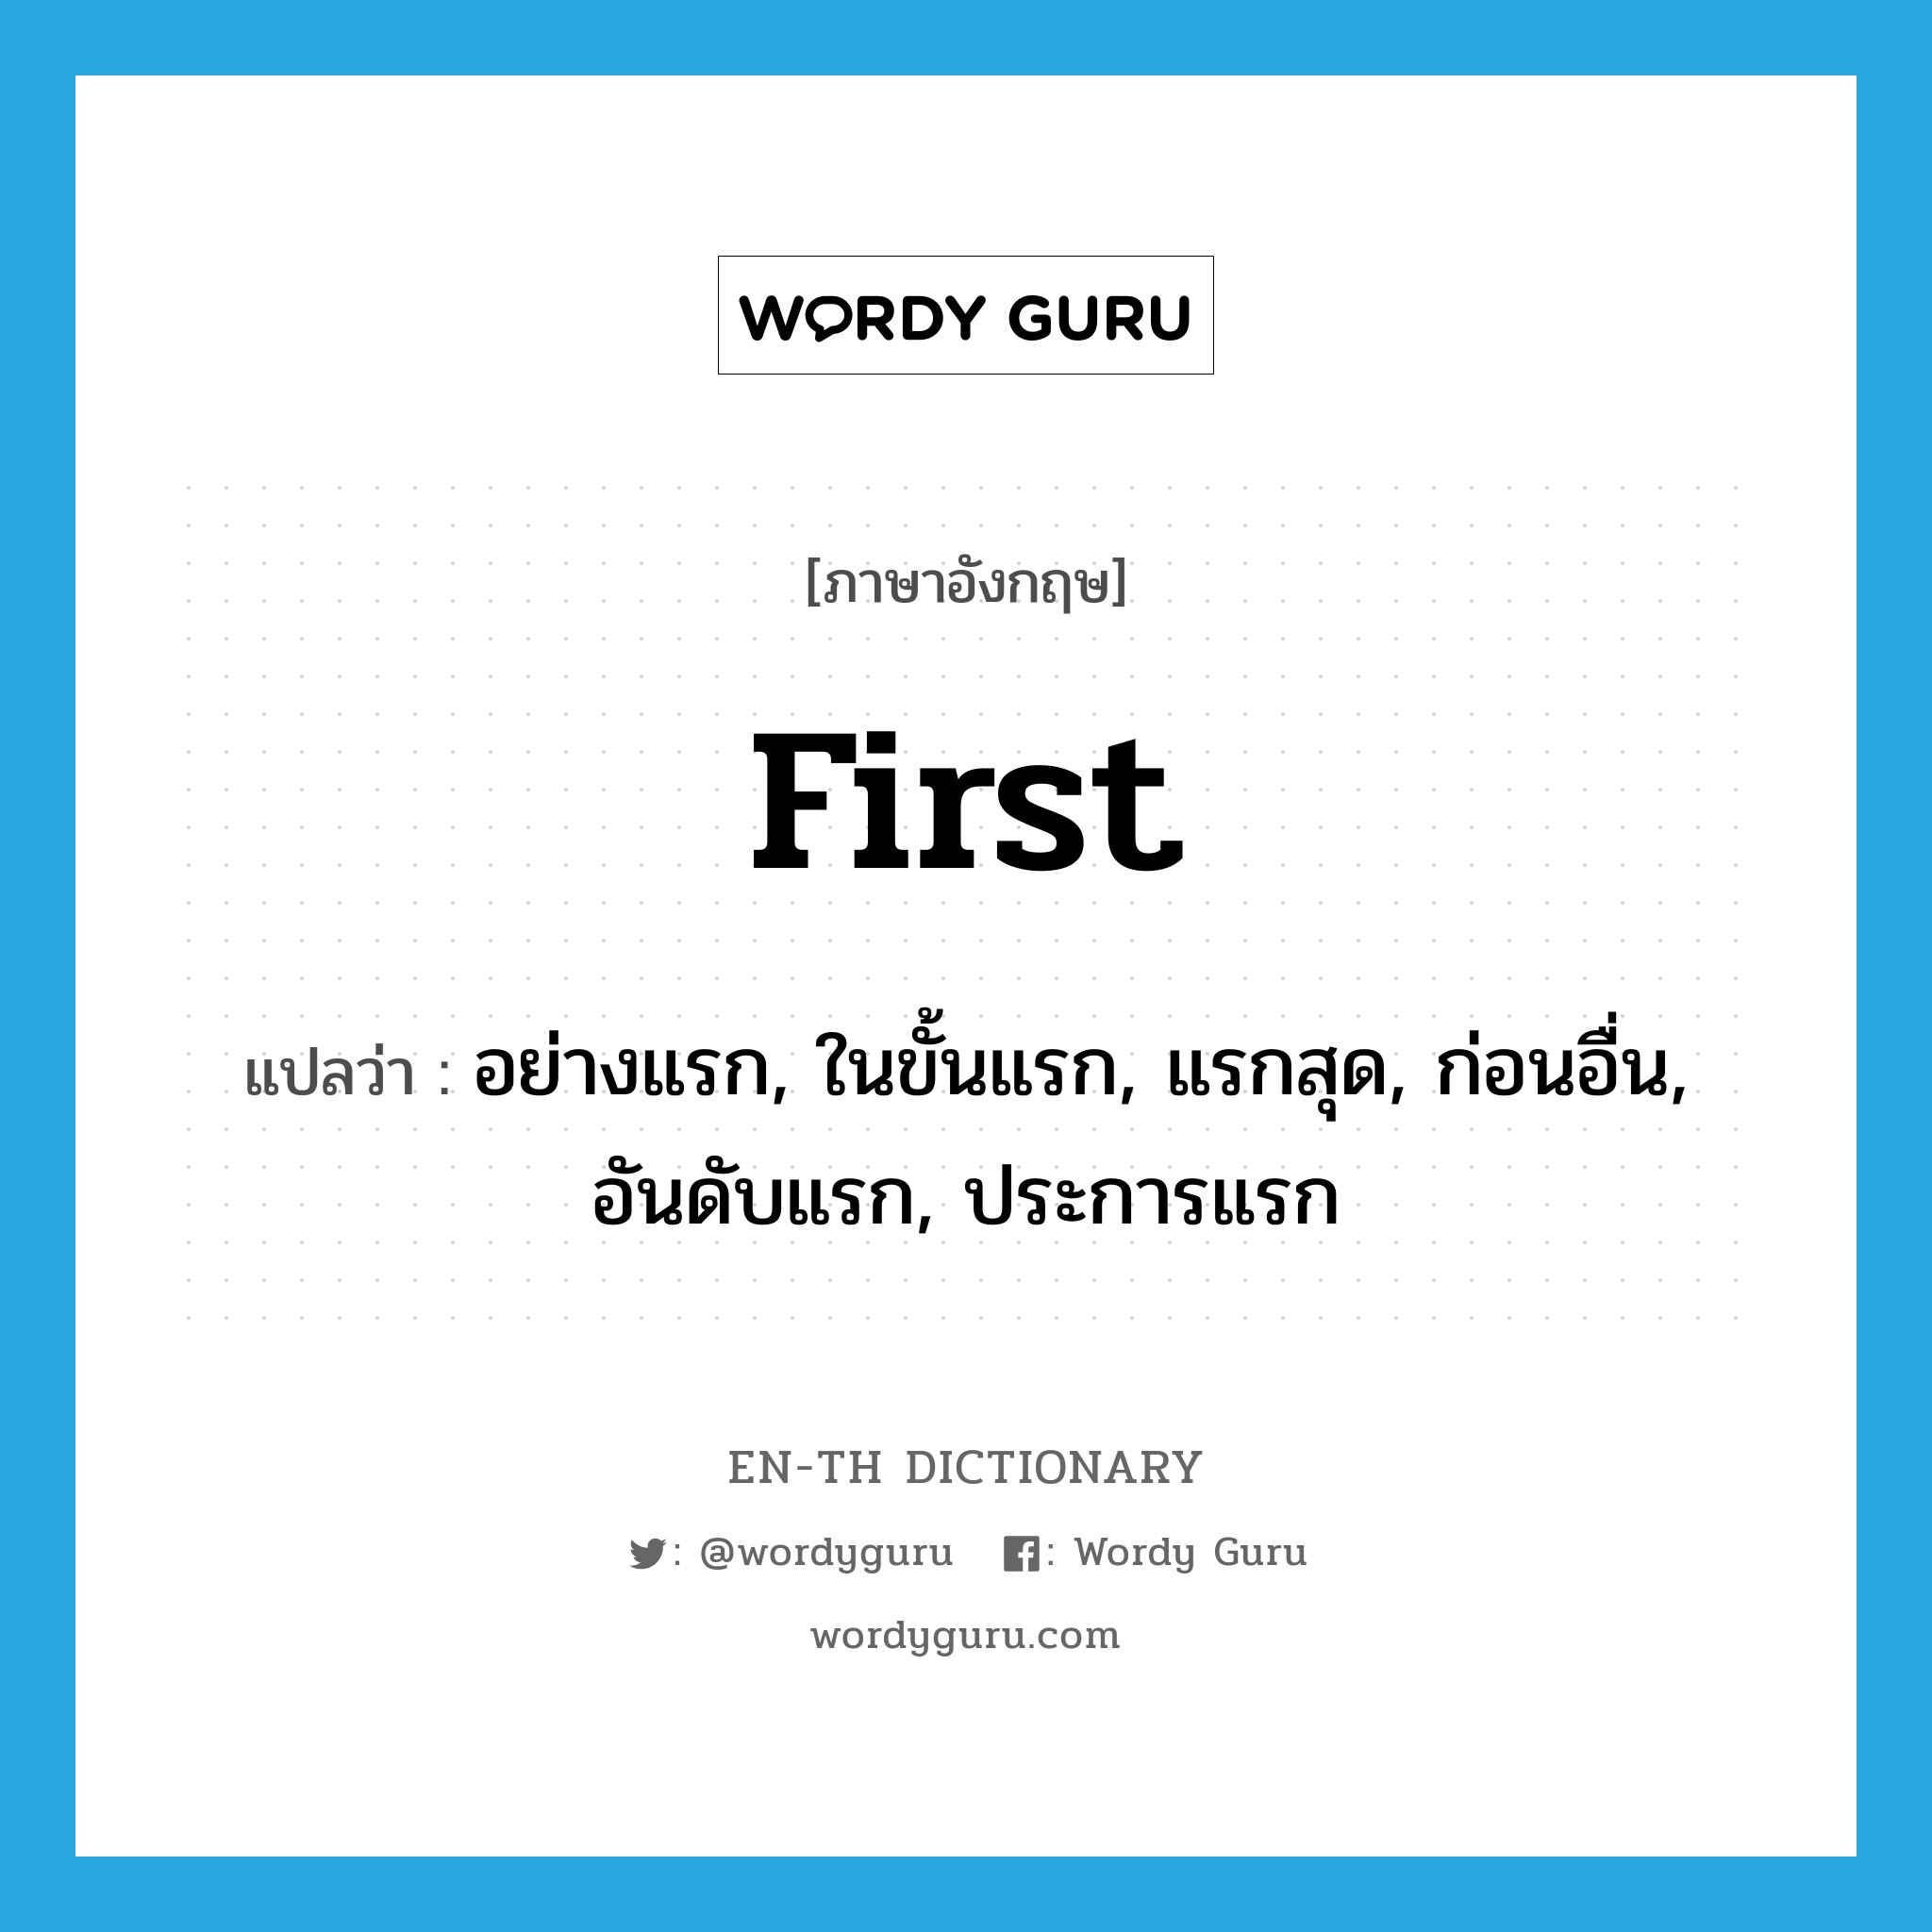 อย่างแรก, ในขั้นแรก, แรกสุด, ก่อนอื่น, อันดับแรก, ประการแรก ภาษาอังกฤษ?, คำศัพท์ภาษาอังกฤษ อย่างแรก, ในขั้นแรก, แรกสุด, ก่อนอื่น, อันดับแรก, ประการแรก แปลว่า first ประเภท ADV หมวด ADV